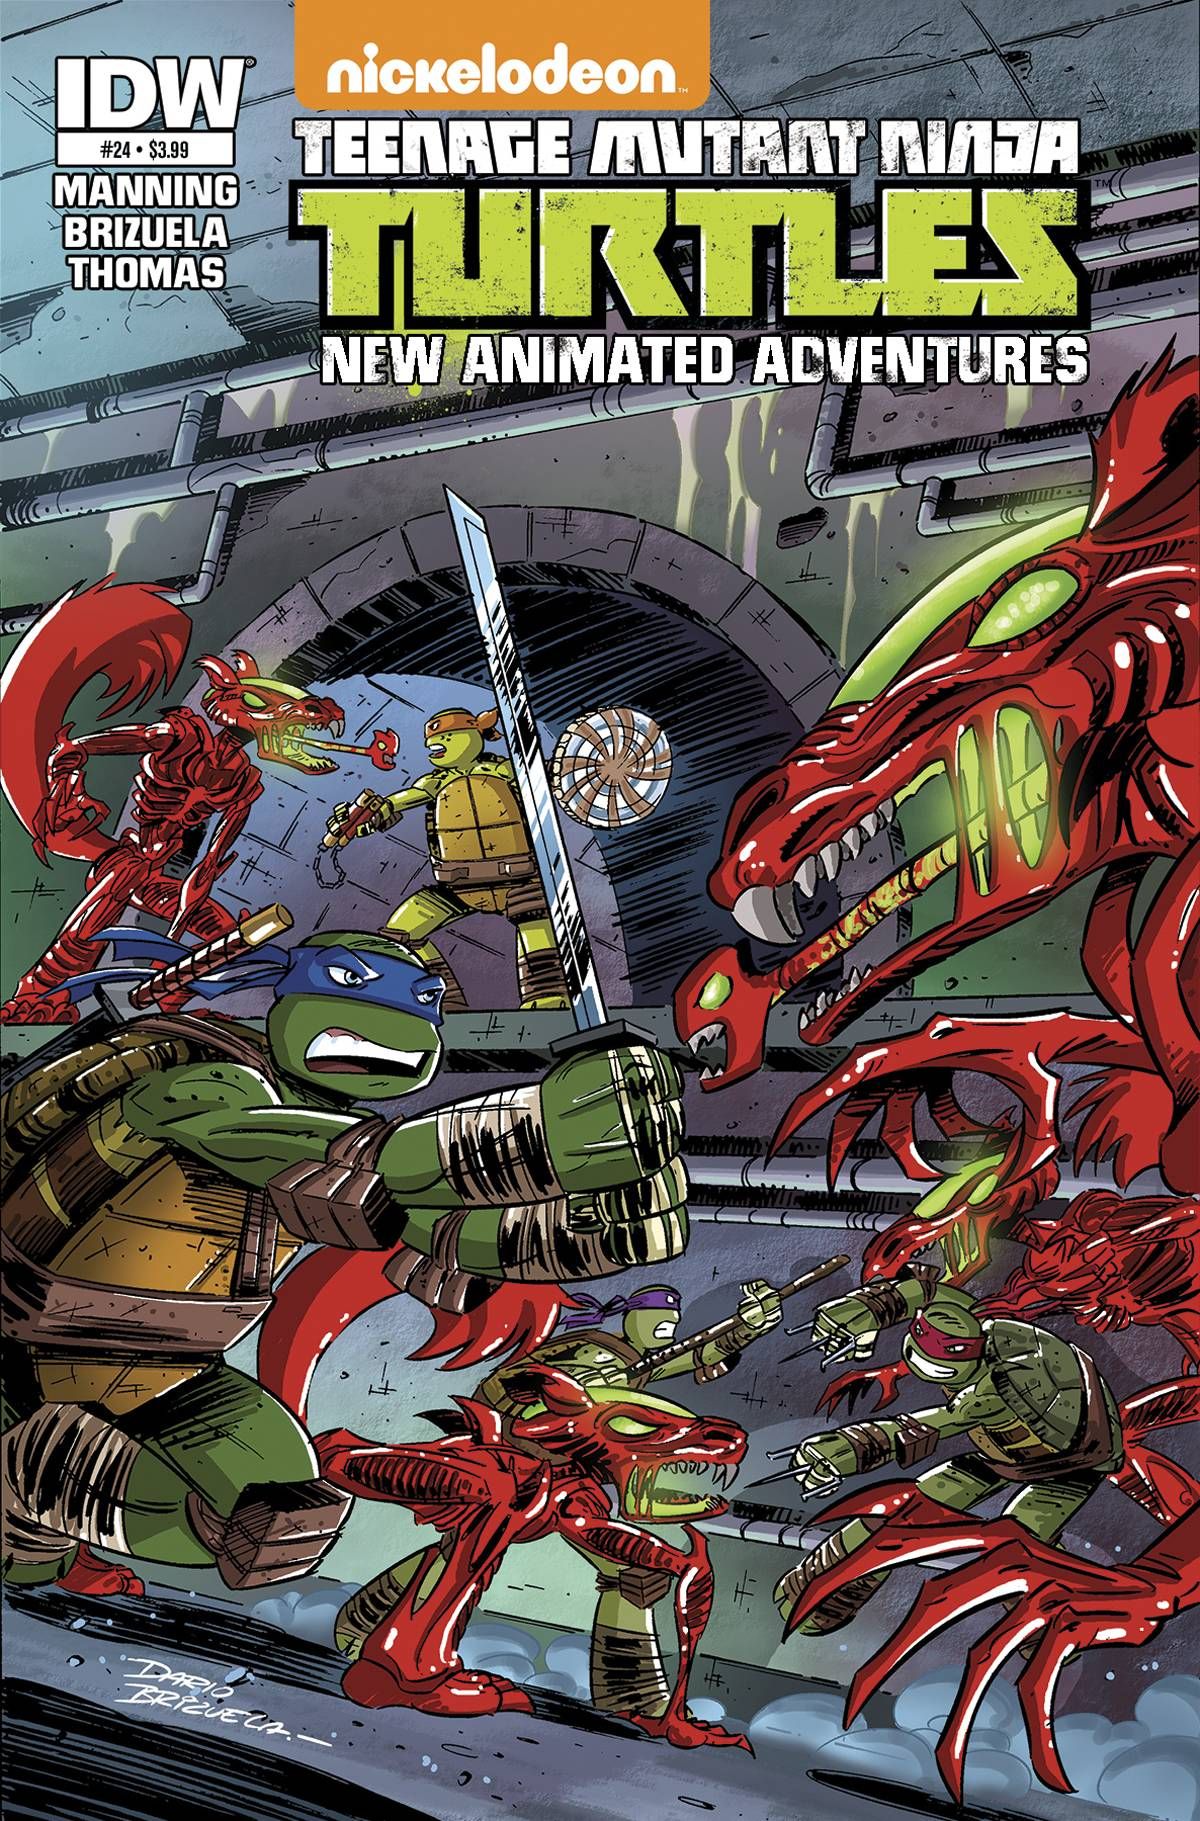 TMNT: New Animated Adventures #24 Comic